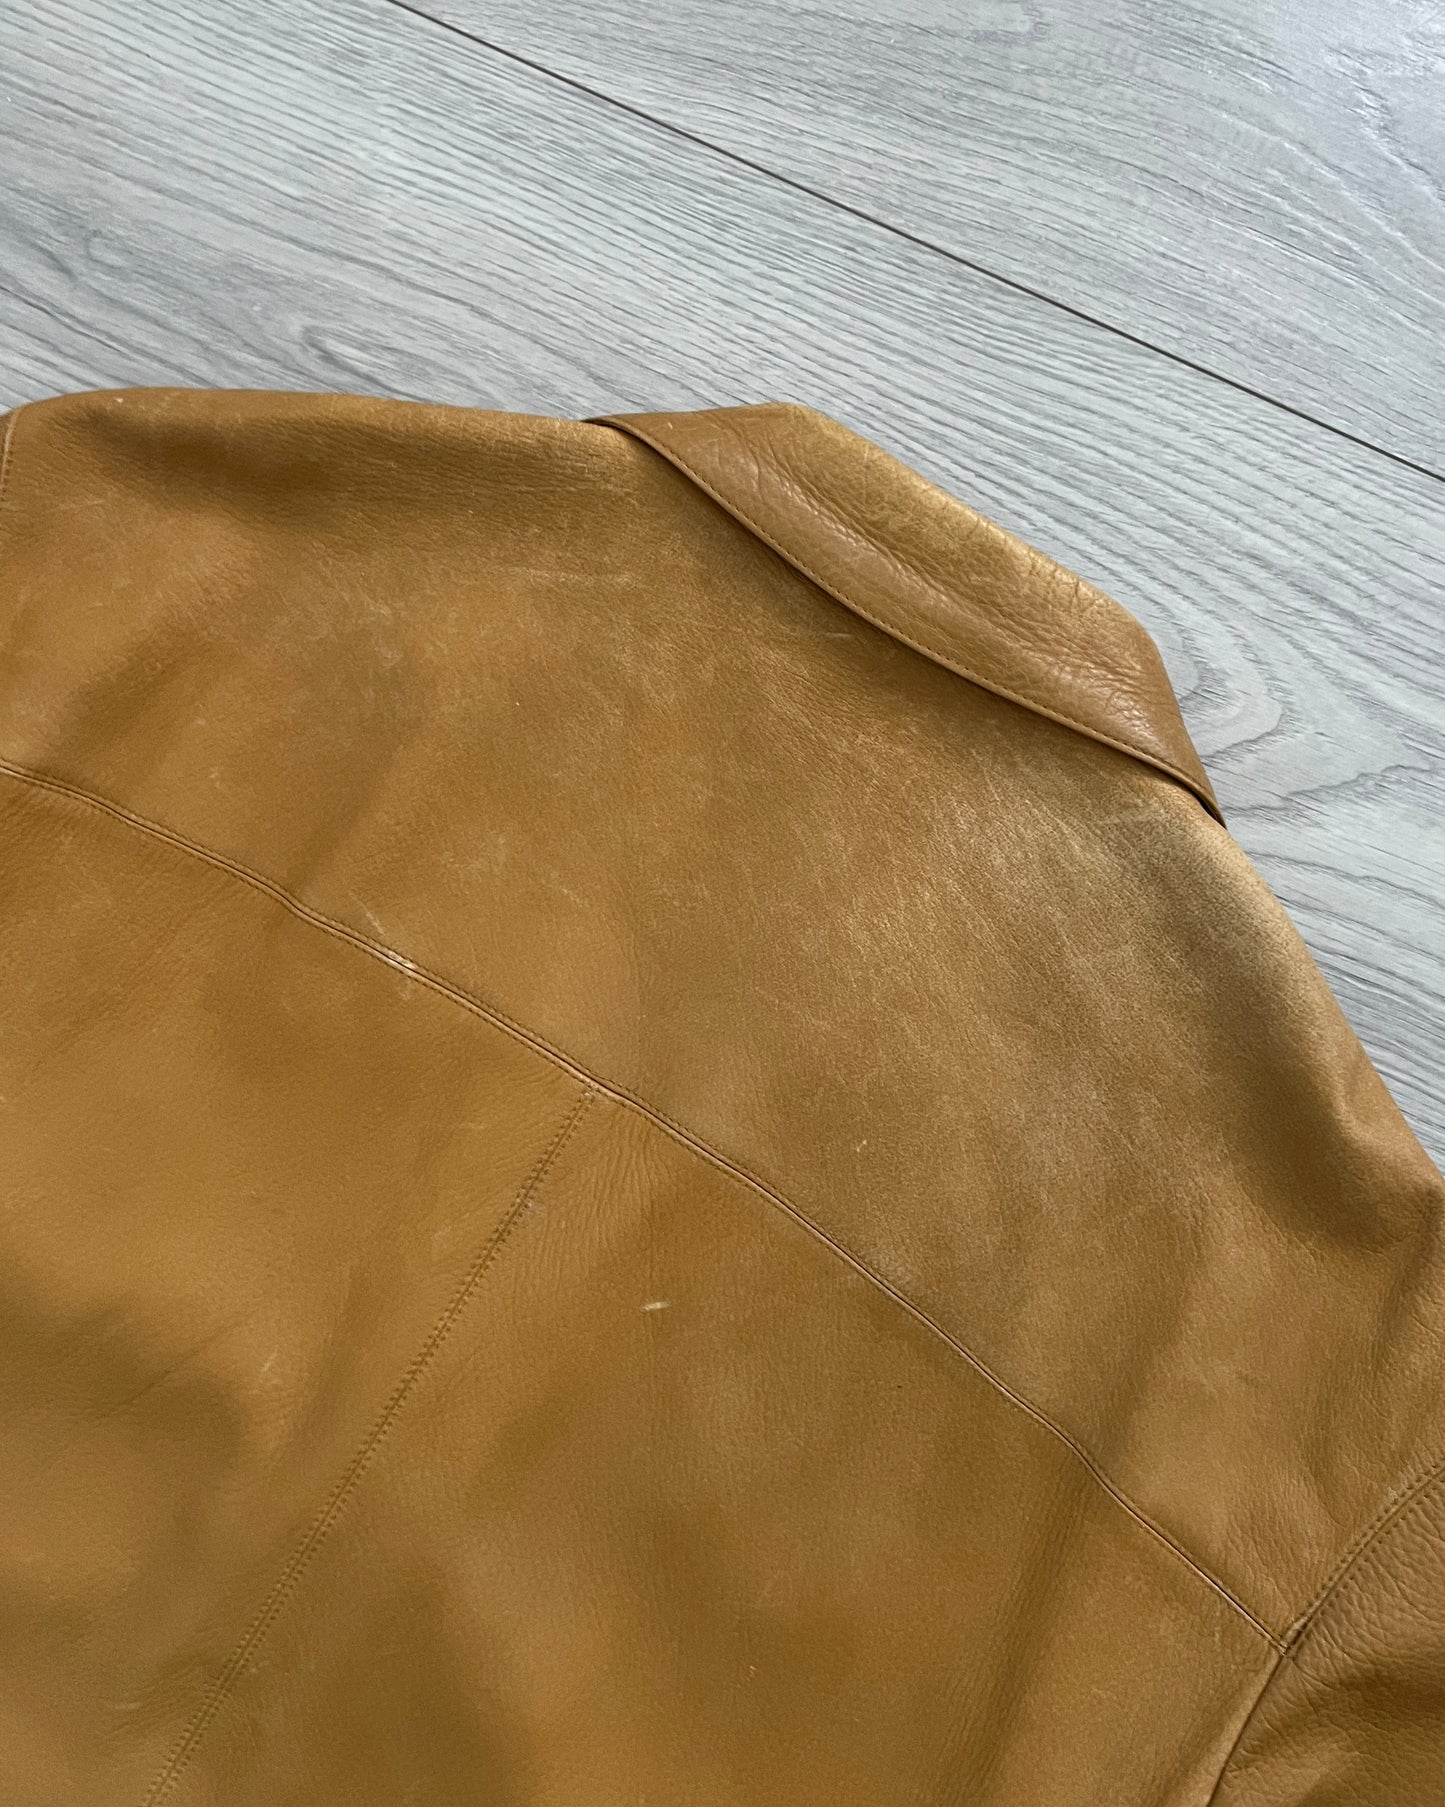 Prada Mainline AW2003 Tan Leather Jacket - Size M